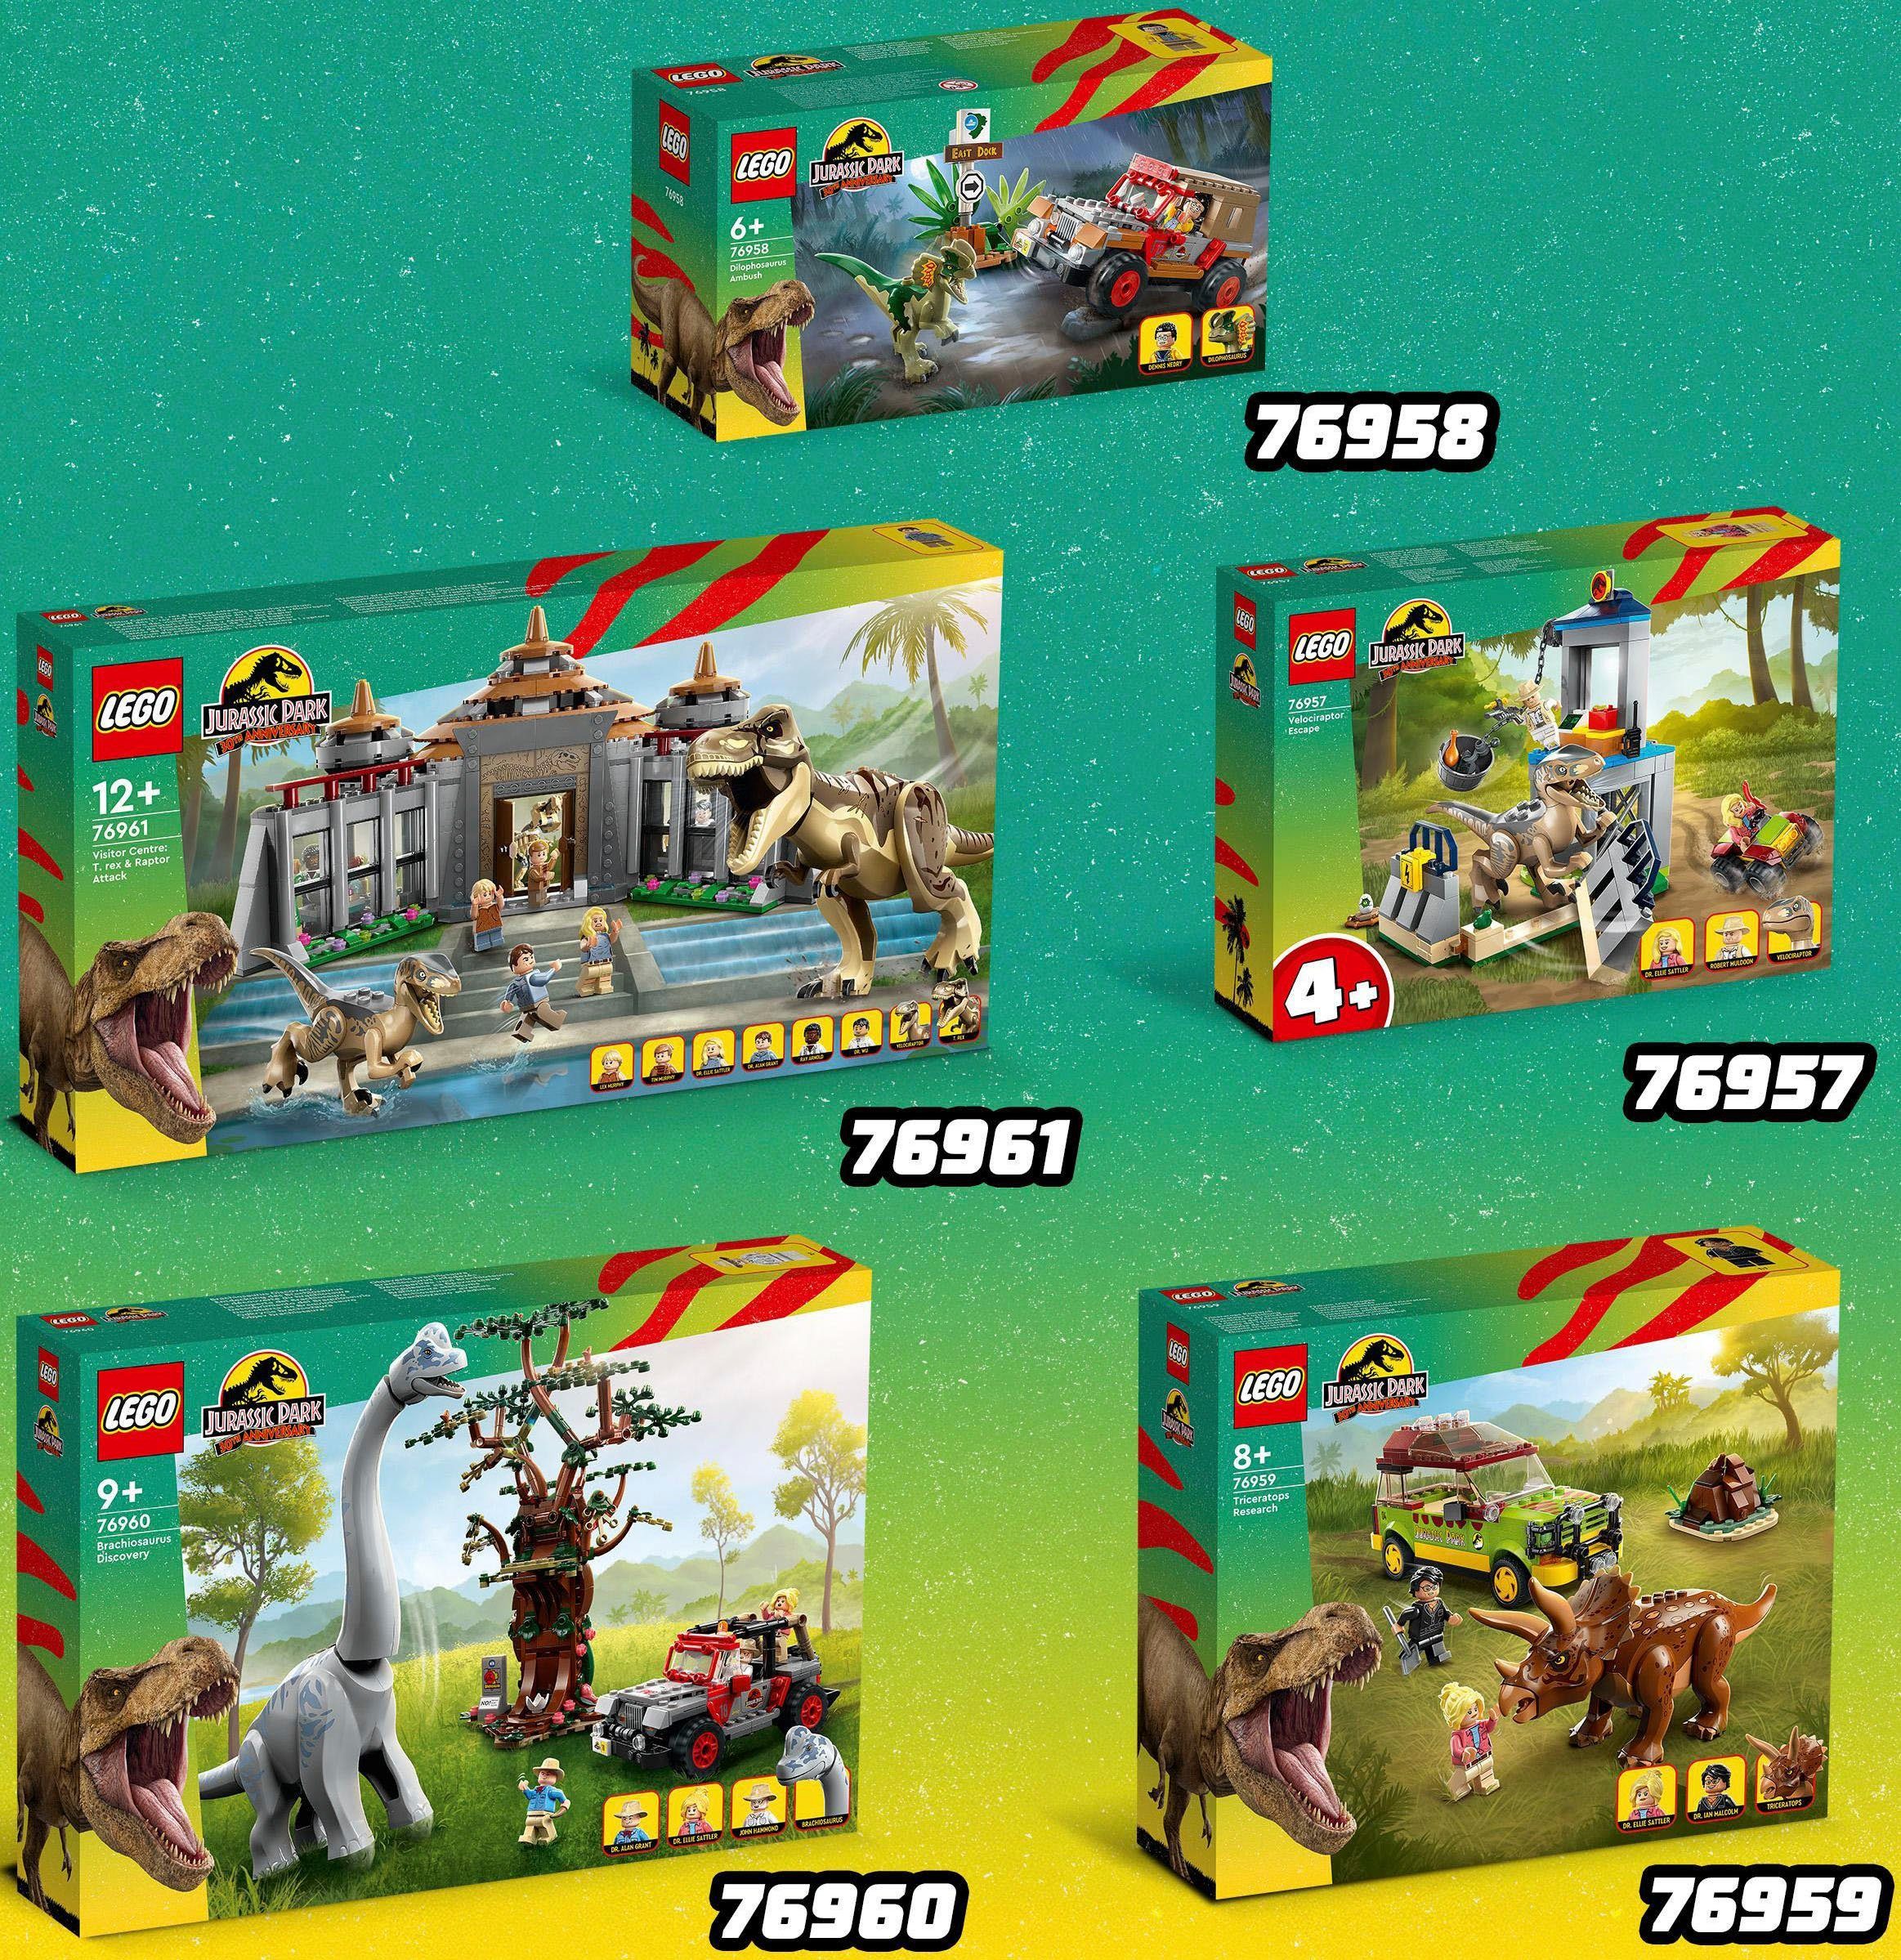 Jurassic Park, LEGO® (211 St), Europe des (76958), Hinterhalt LEGO® Konstruktionsspielsteine Made Dilophosaurus in